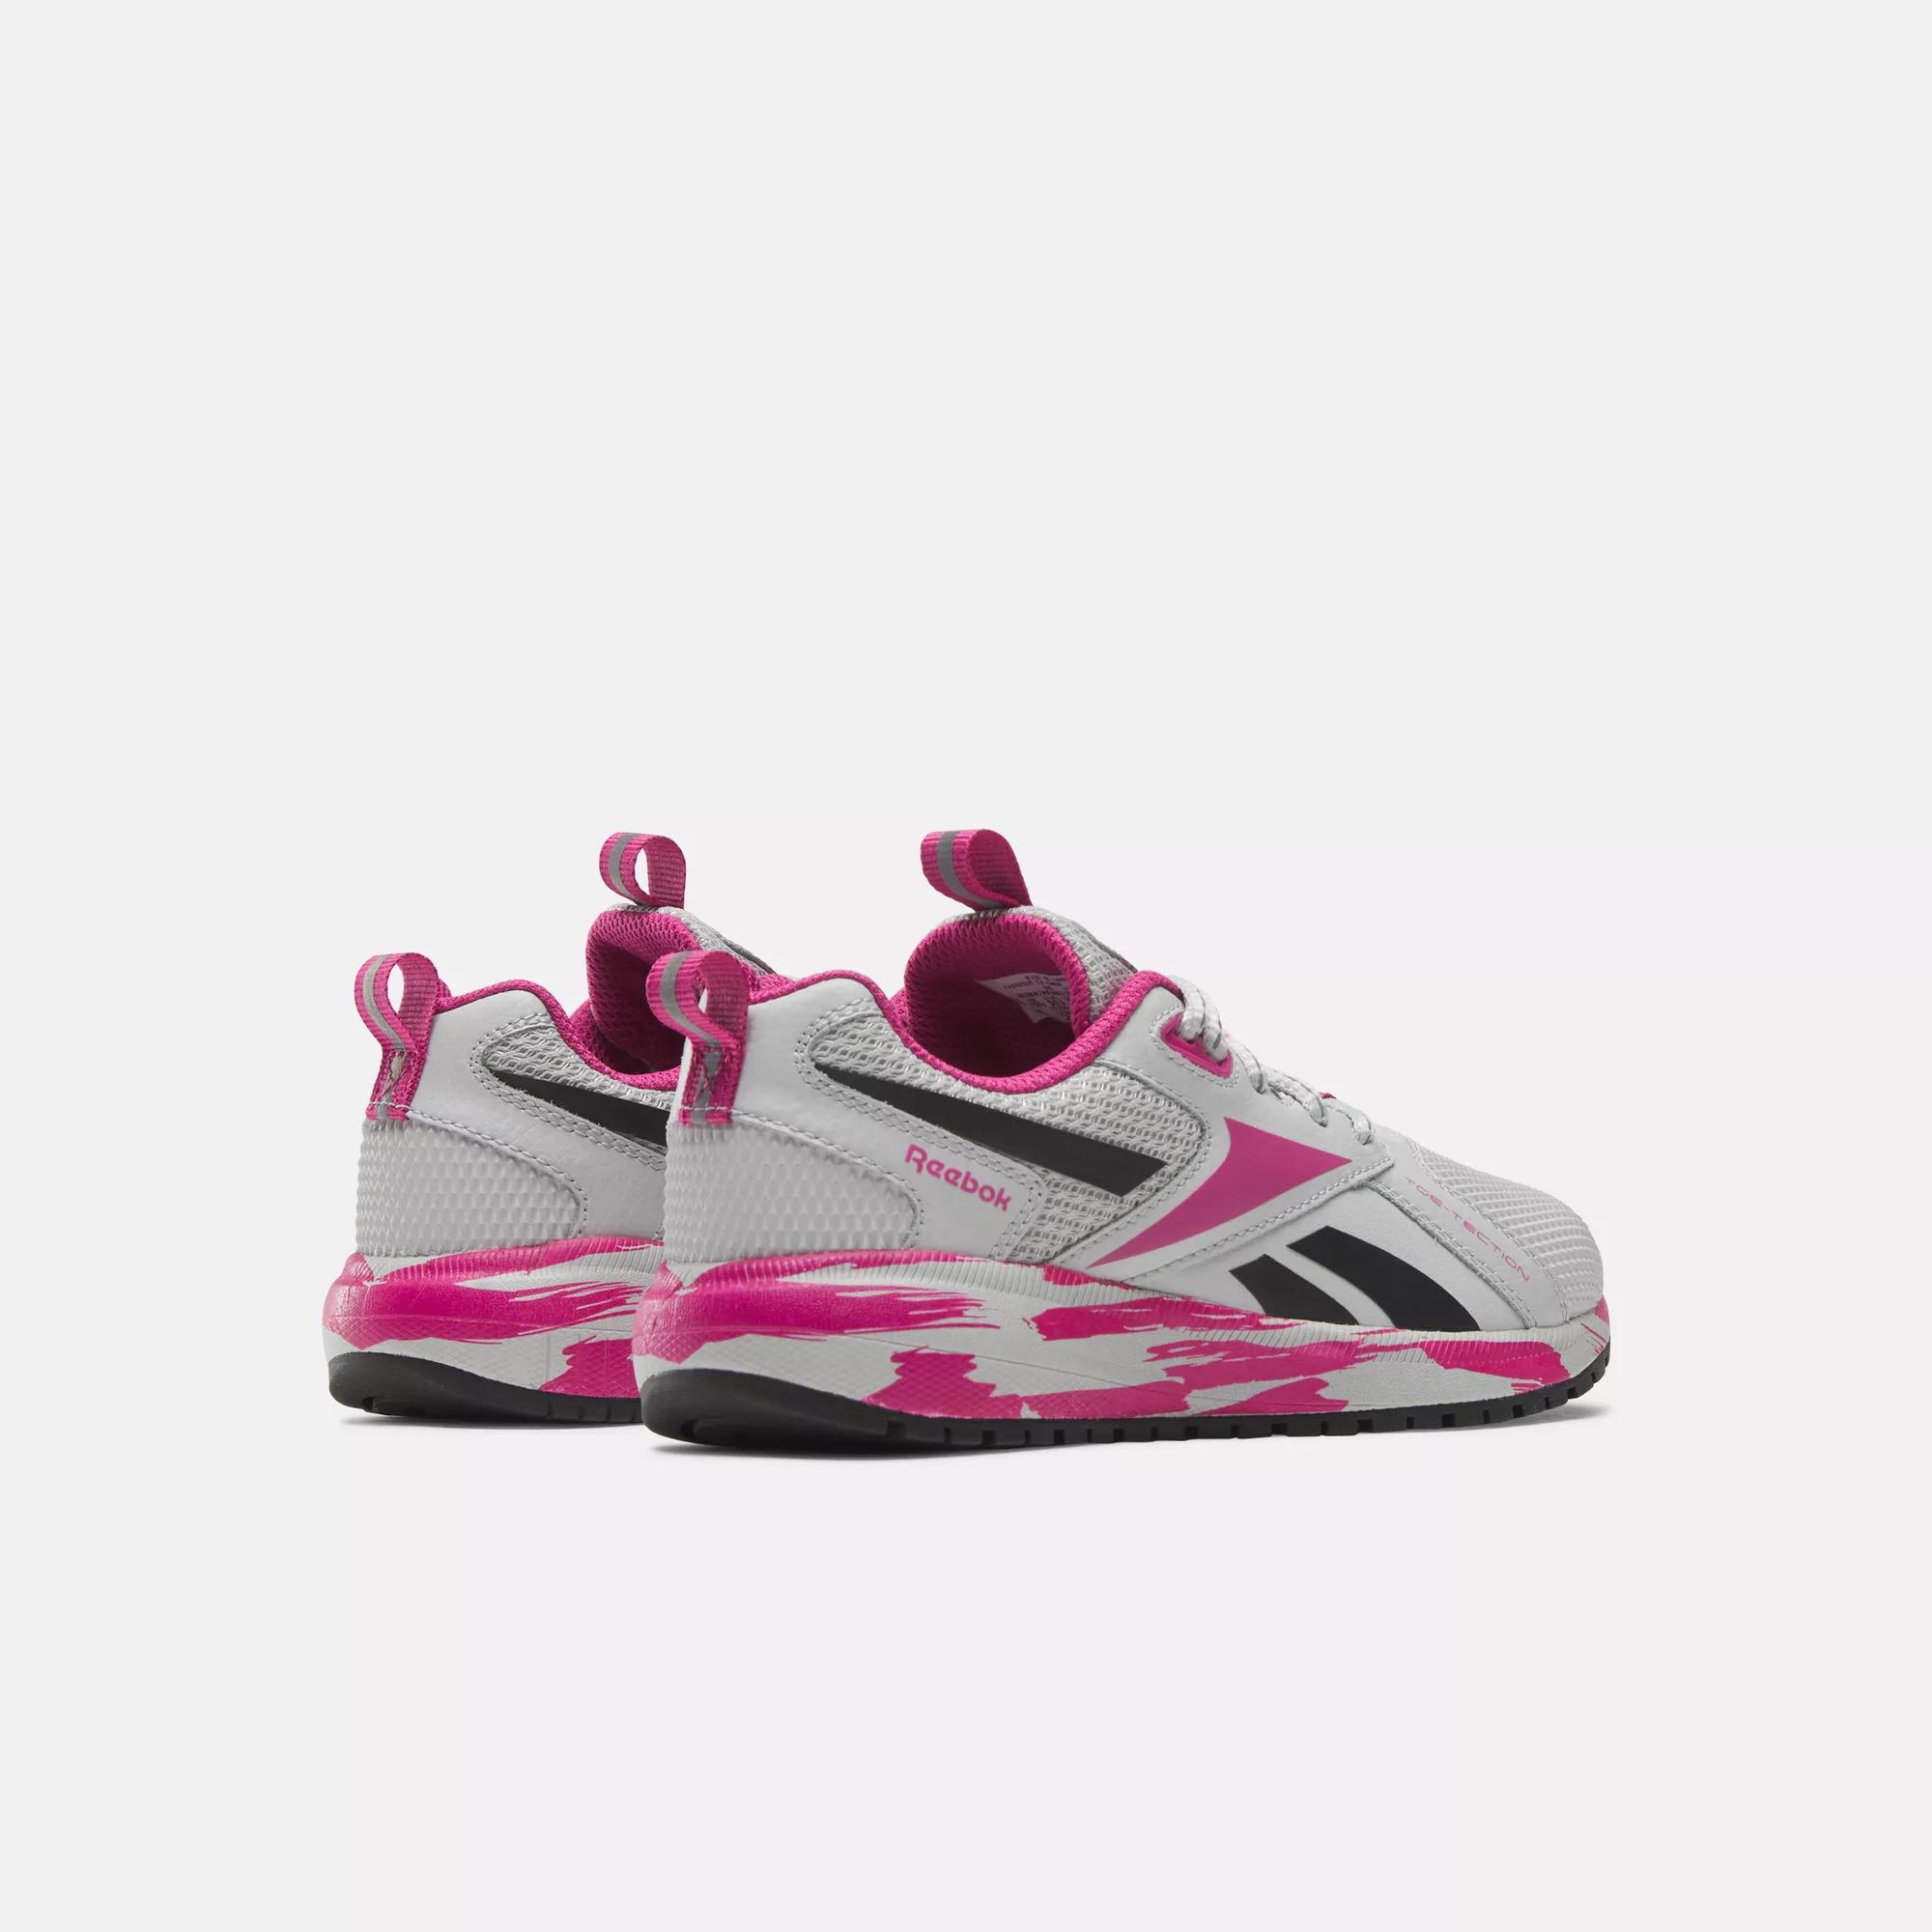 Steely | / Preschool Reebok XT Shoes Pink - Durable Reebok / Black Core - Semi Fog Proud